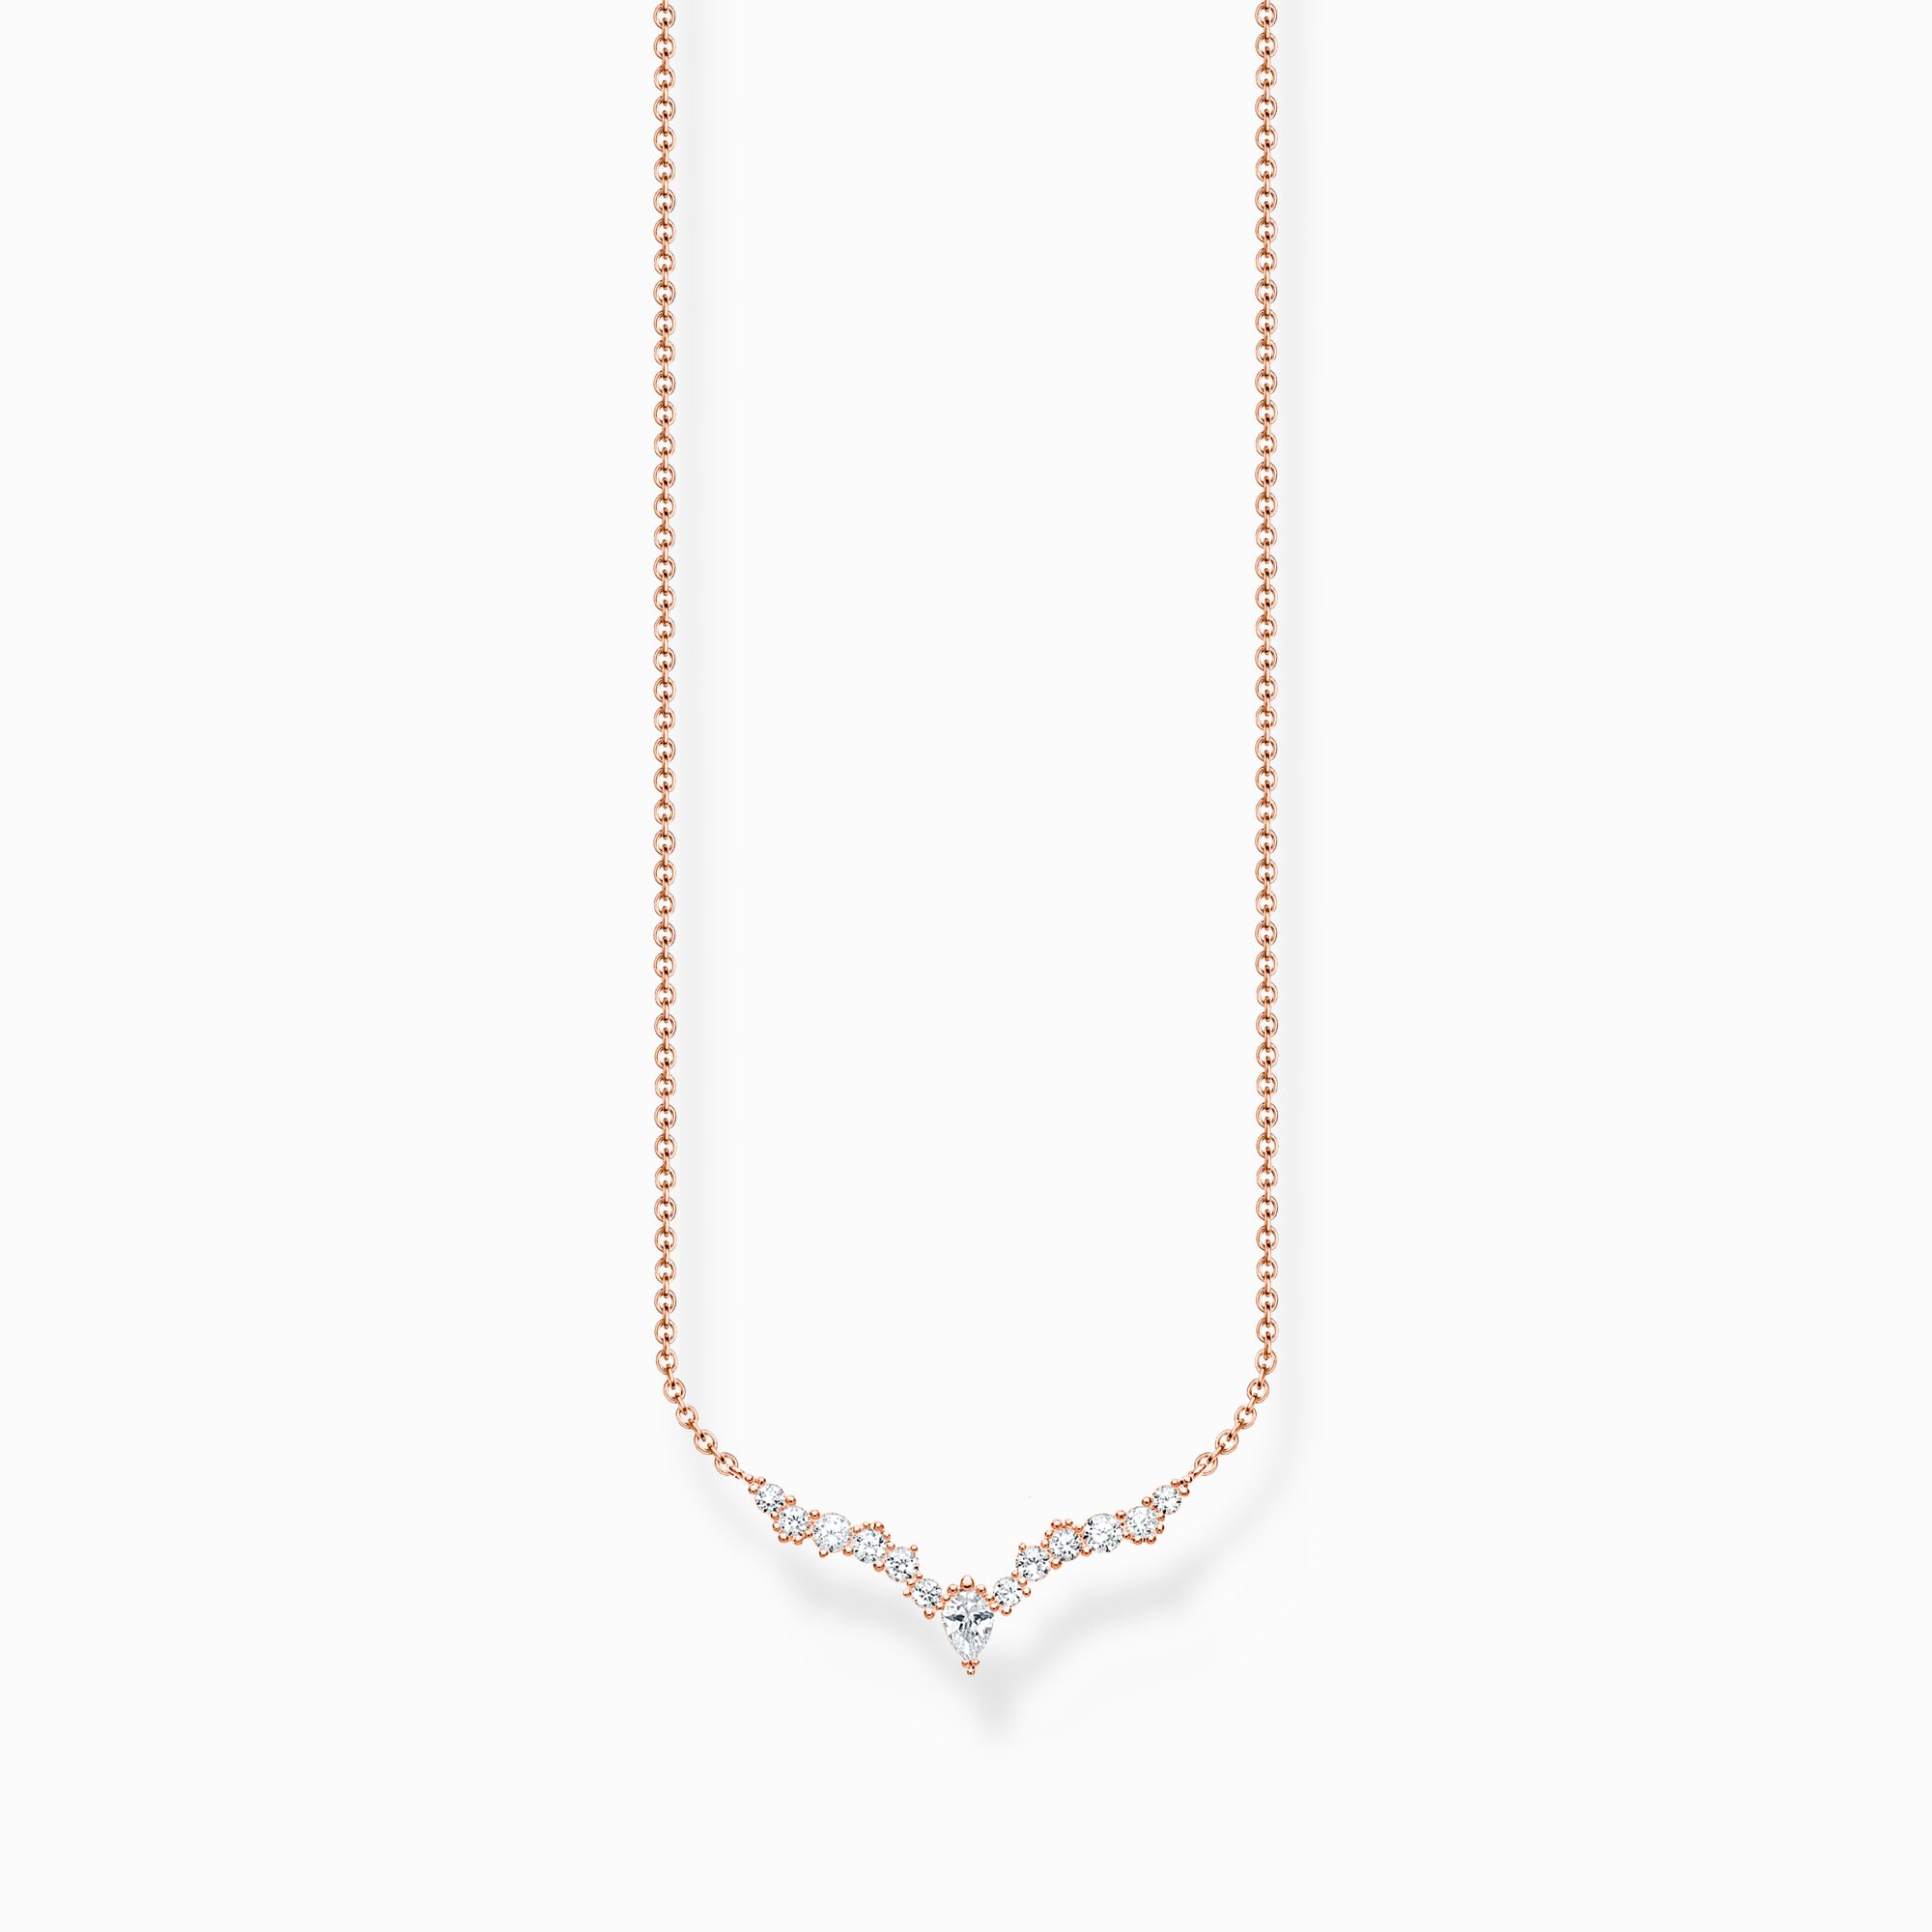 Cadena cristales de hielo oro rosado de la colección Charming Collection en la tienda online de THOMAS SABO